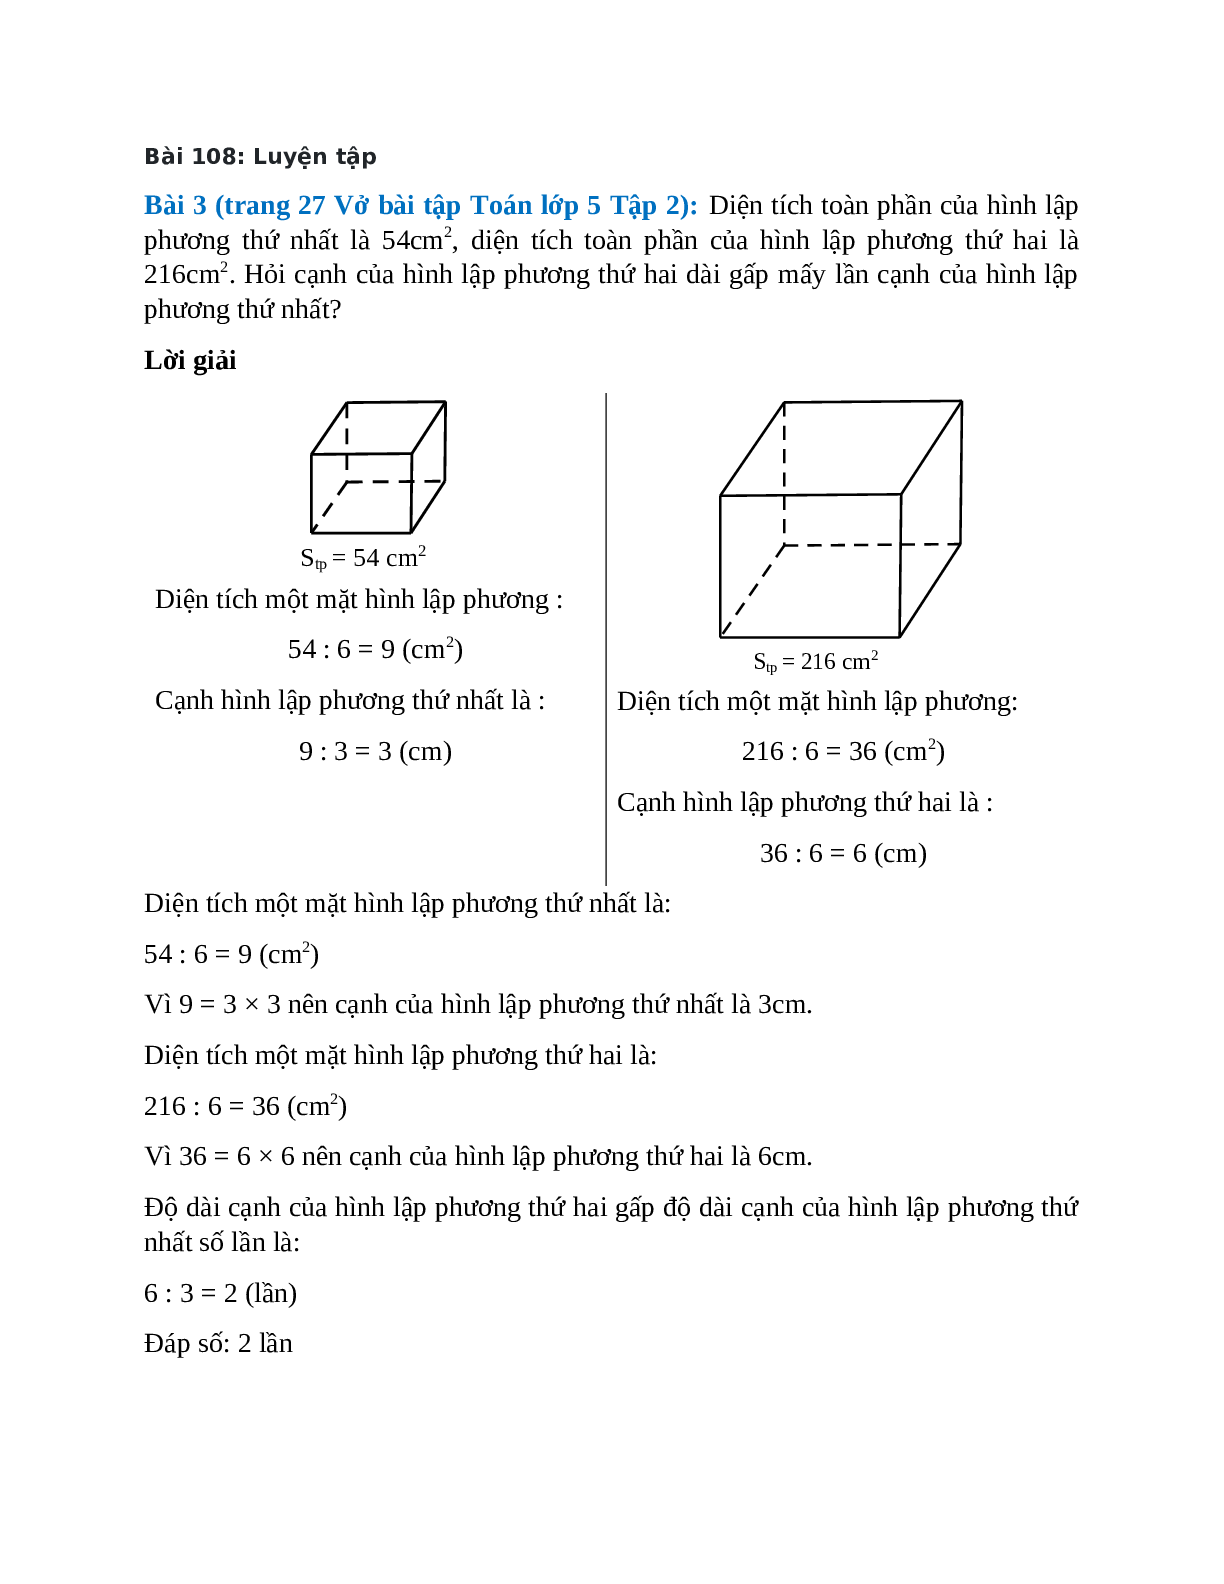 Diện tích toàn phần của hình lập phương thứ nhất là 54cm2 (trang 1)